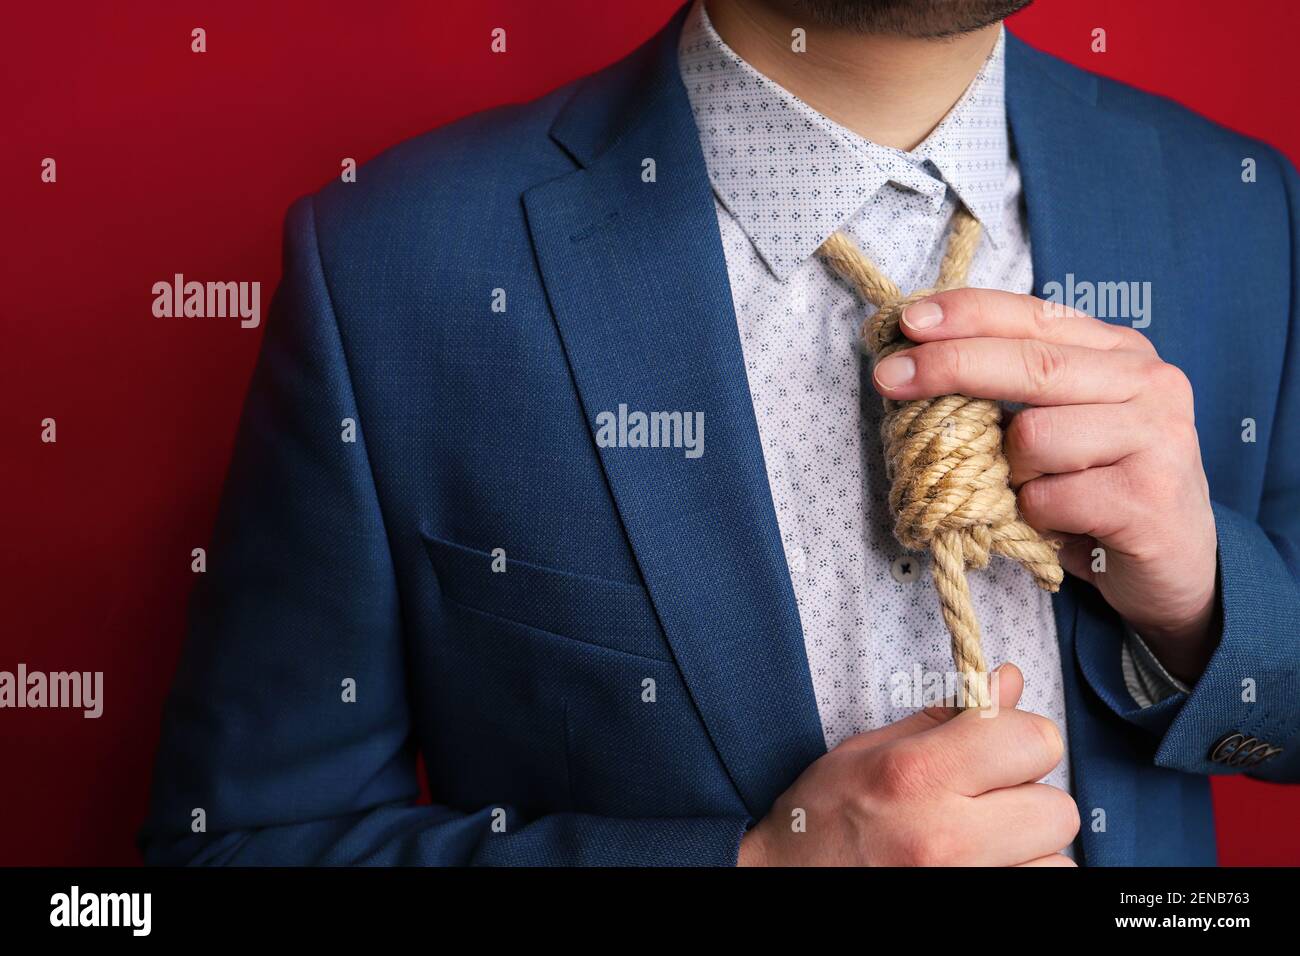 verzweifelter Mann mit Schleife statt Krawatte Stockfotografie - Alamy